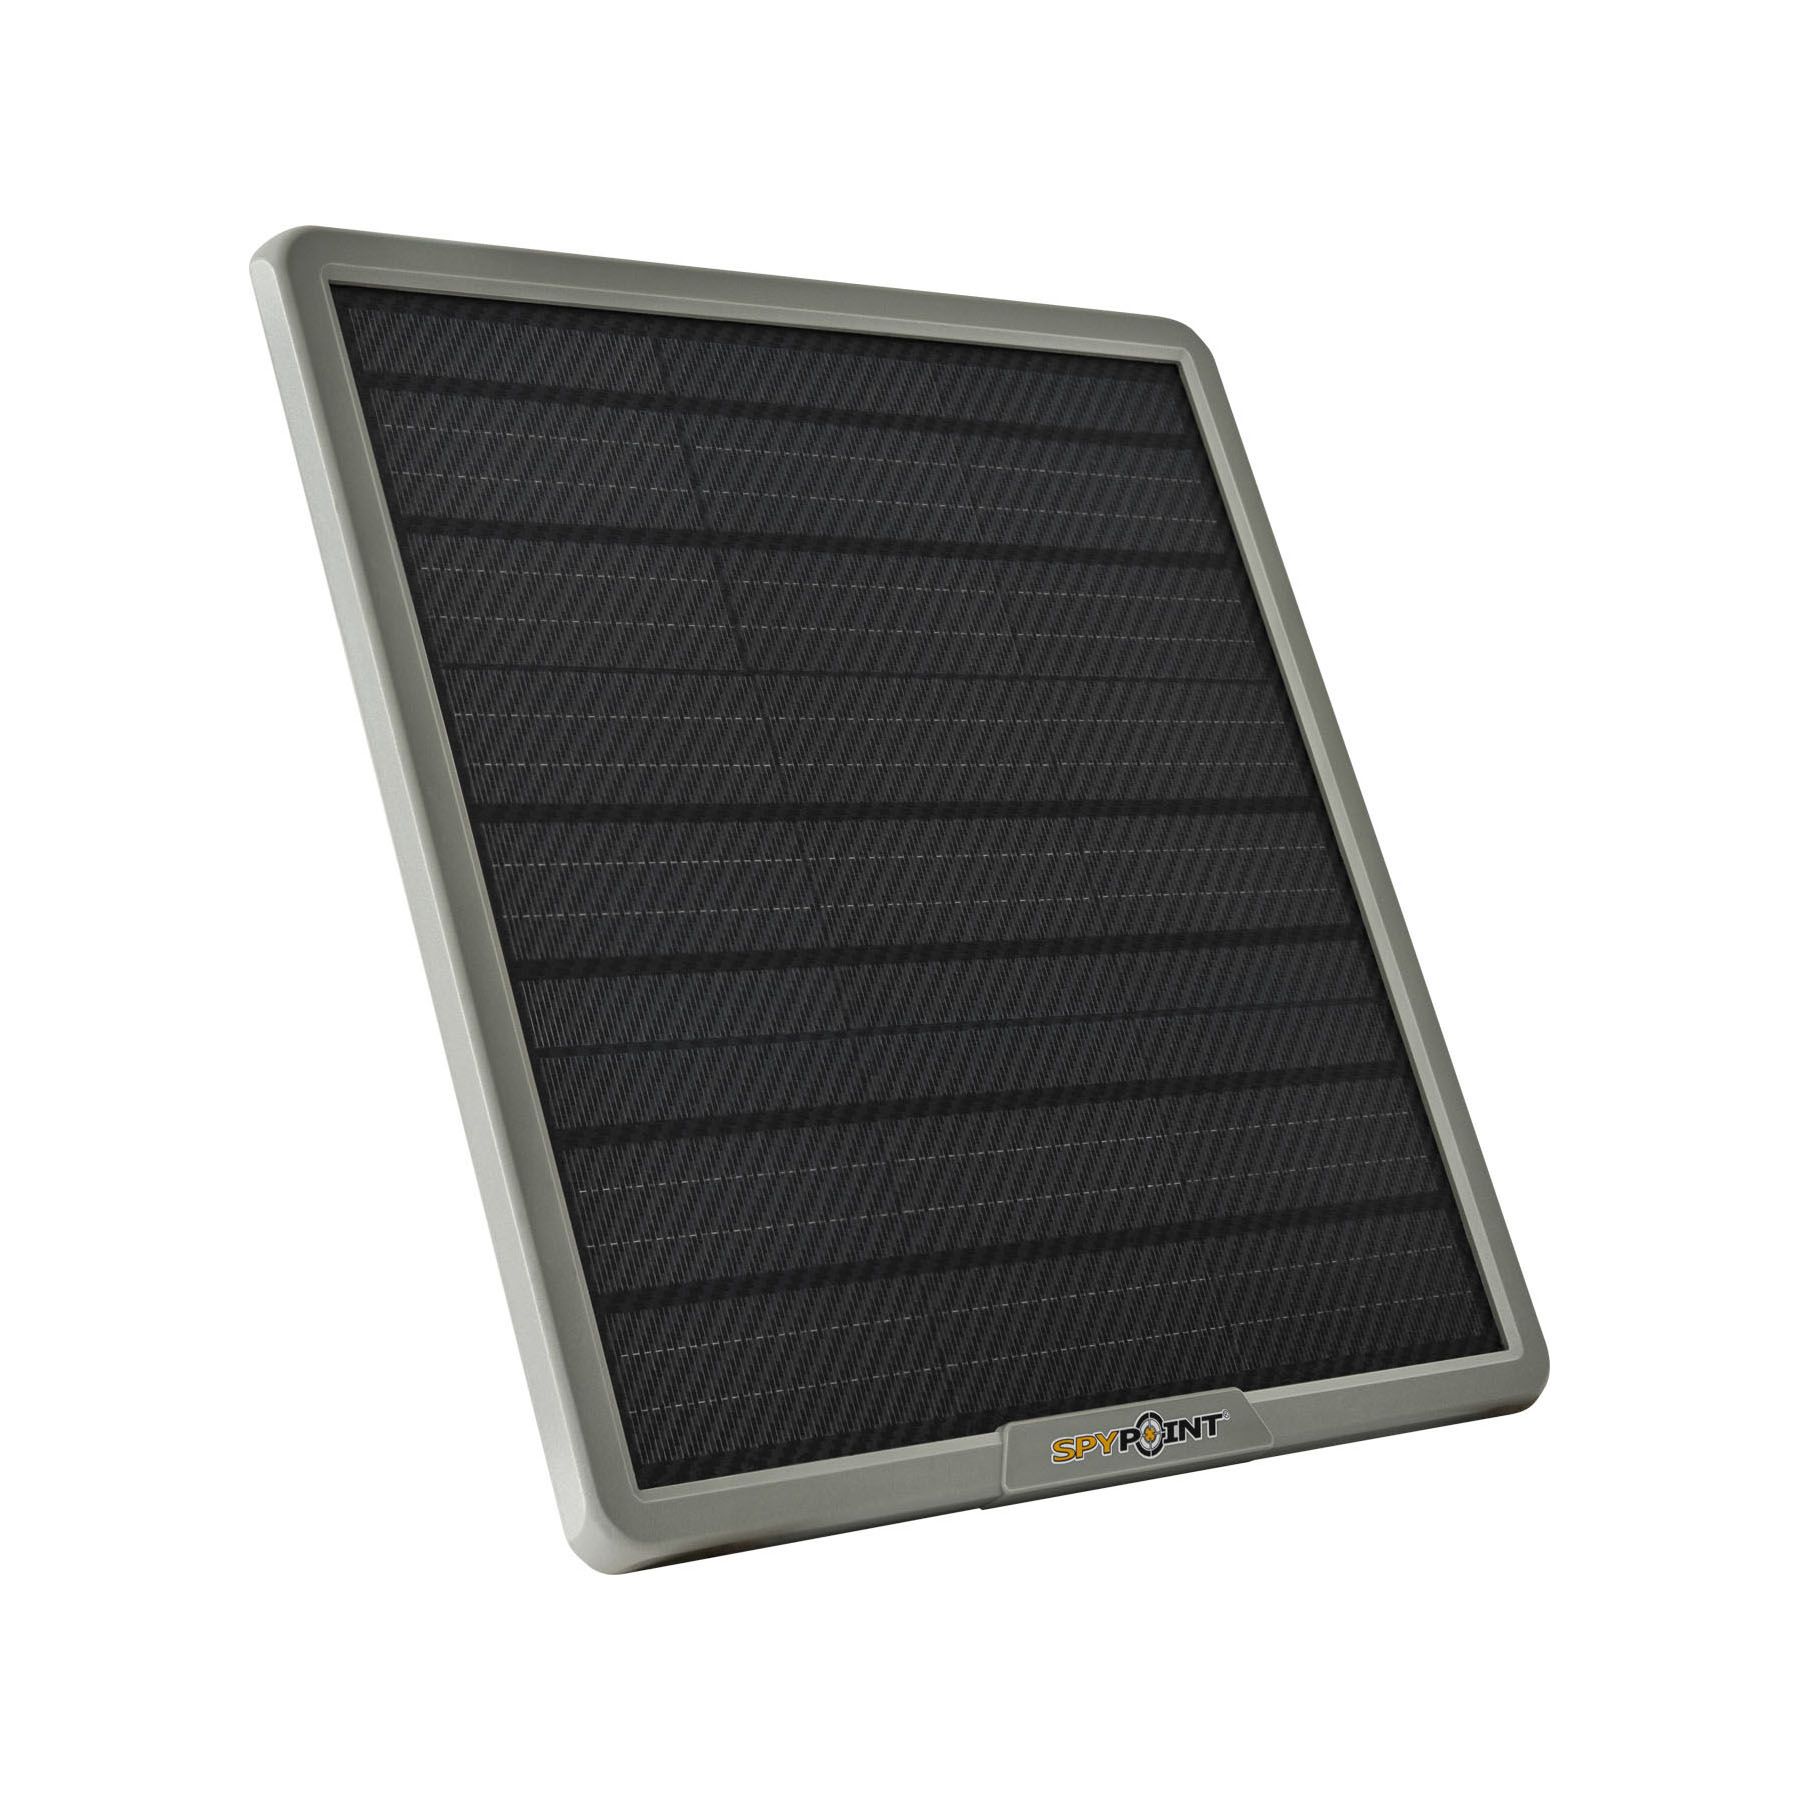 Spypoint Solar Power Bank/Un3480/188 thumbnail